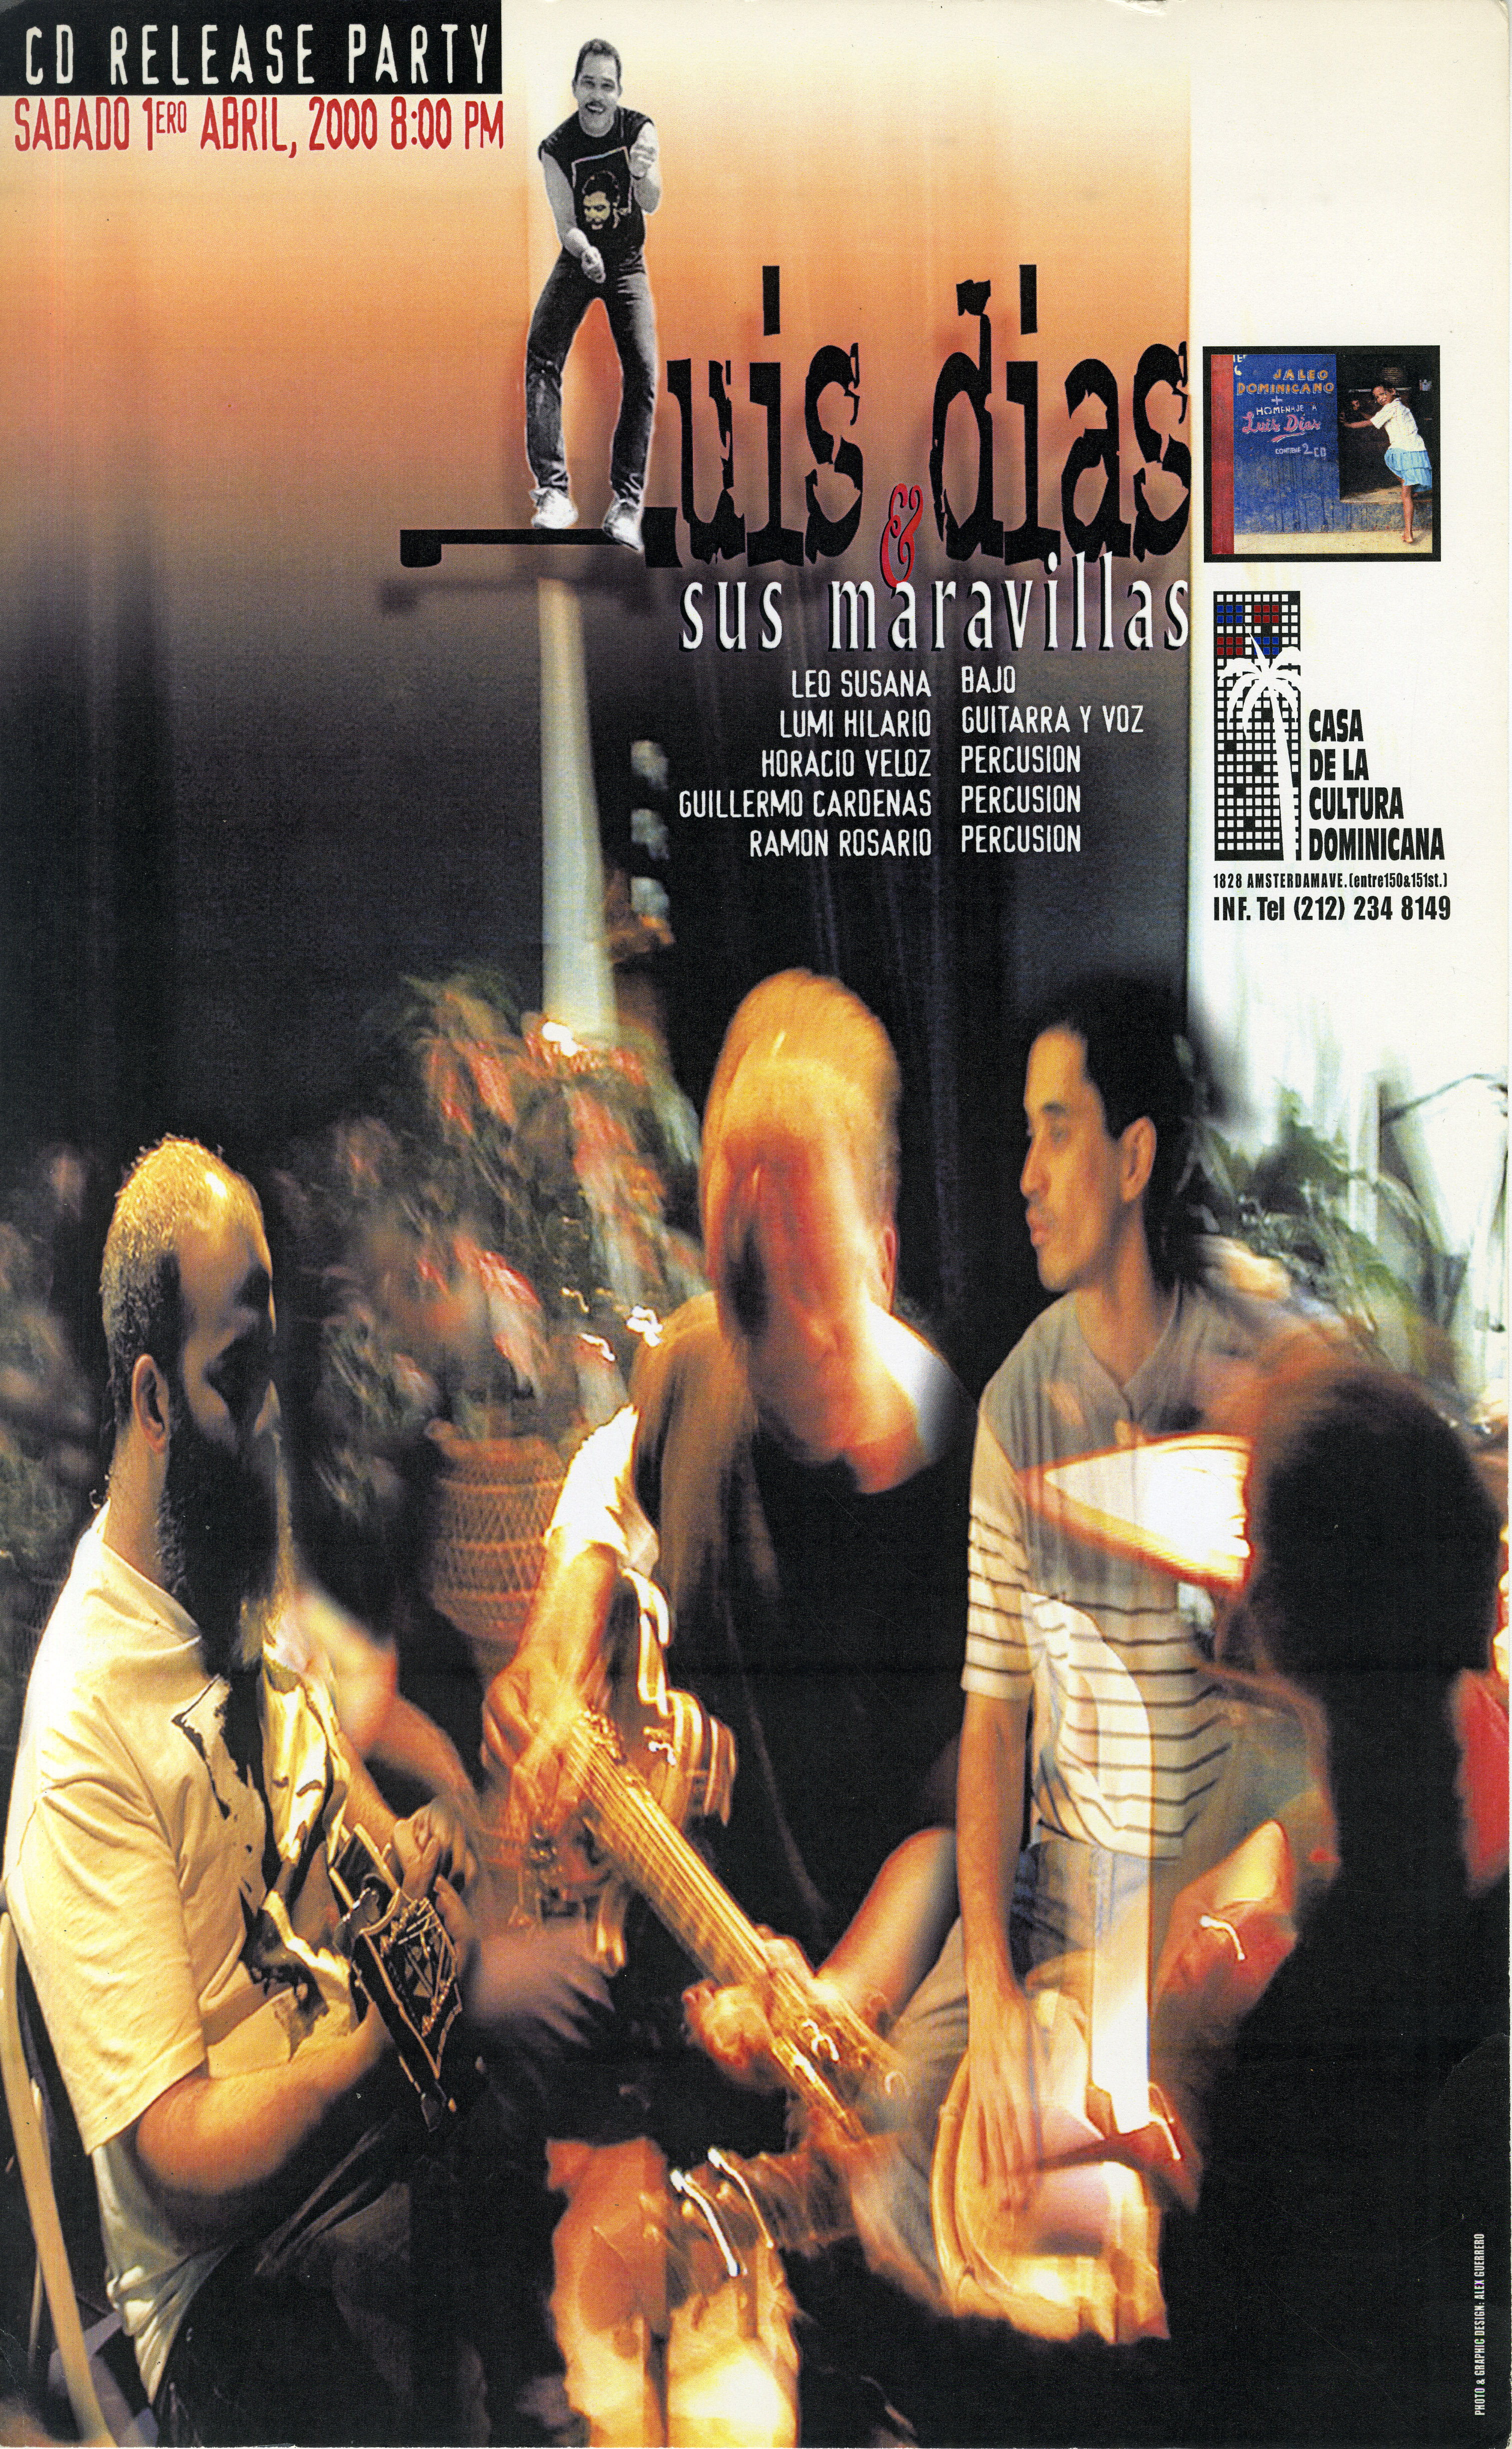 CD Release Party, Luis Días y sus maravillas Concert Poster, April 1, 2000